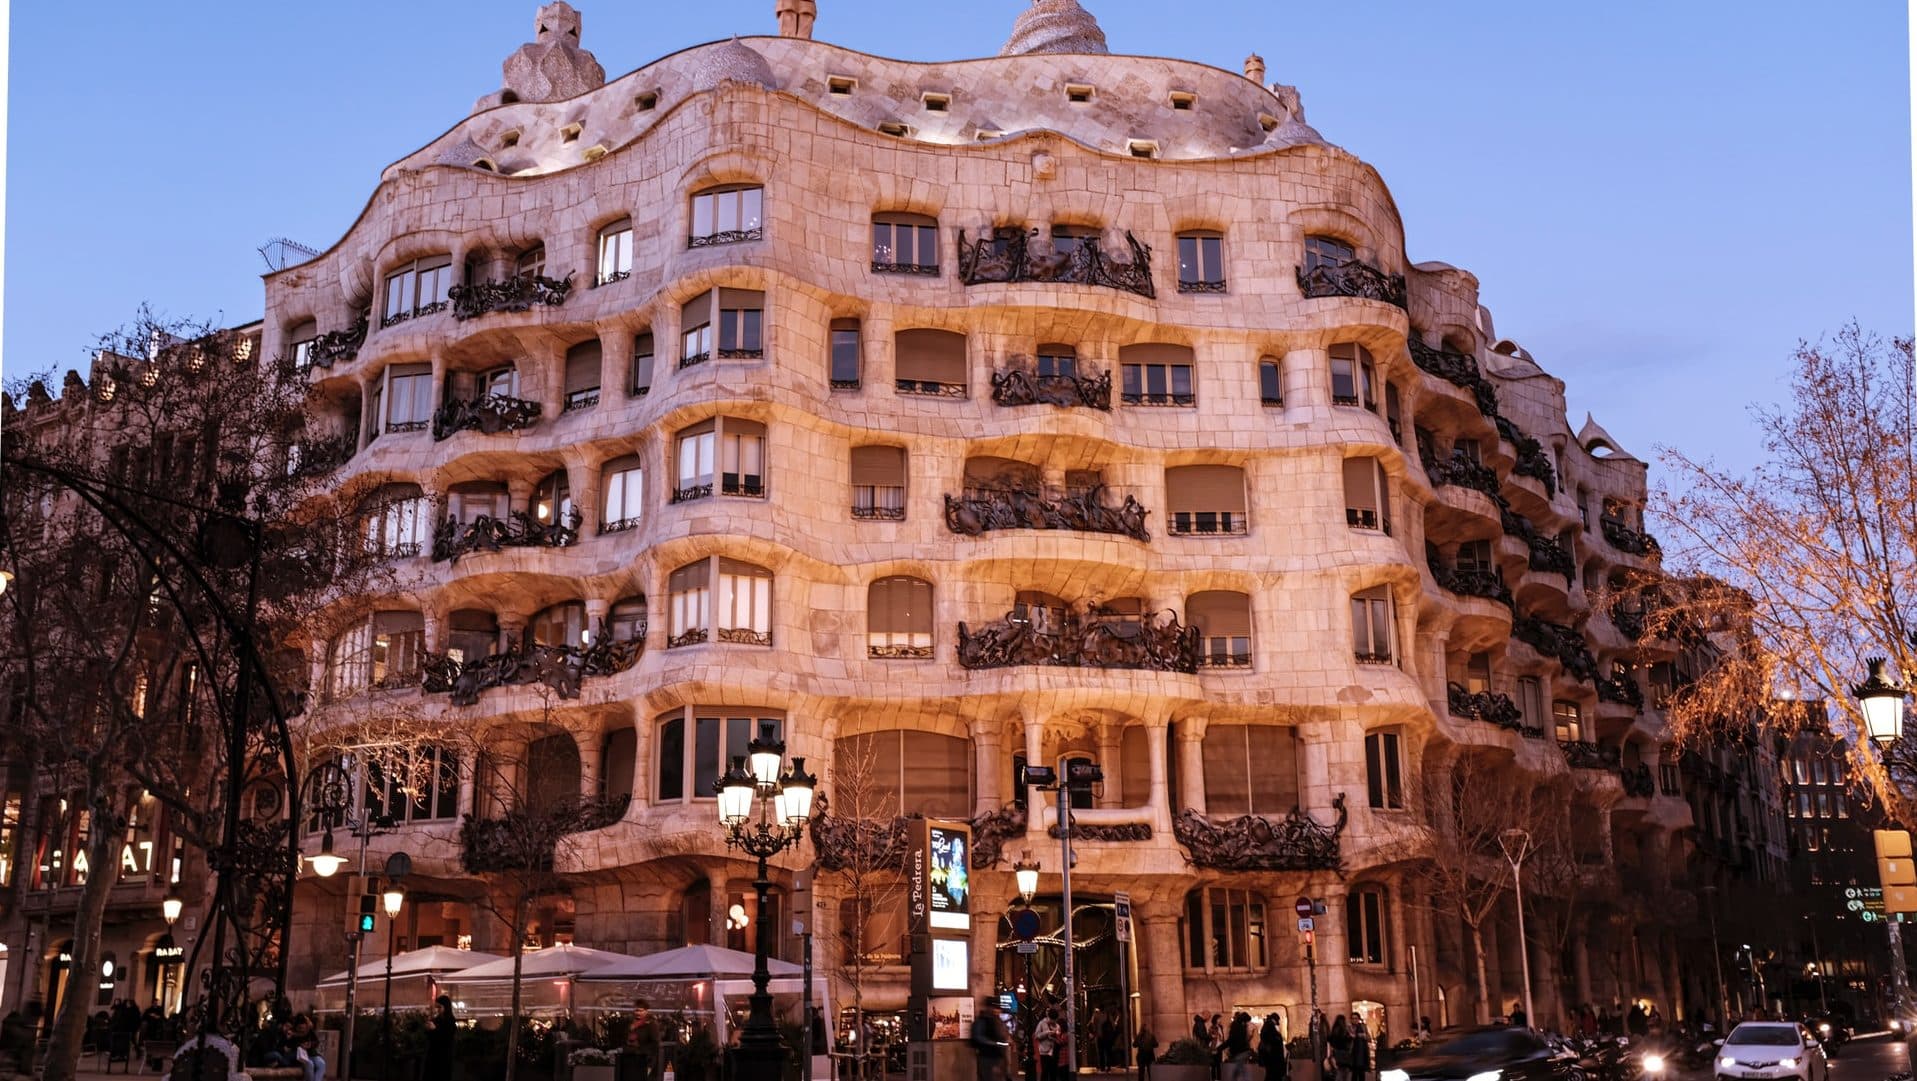 La Pedrera es una de las obras maestras arquitectónicas de Barcelona